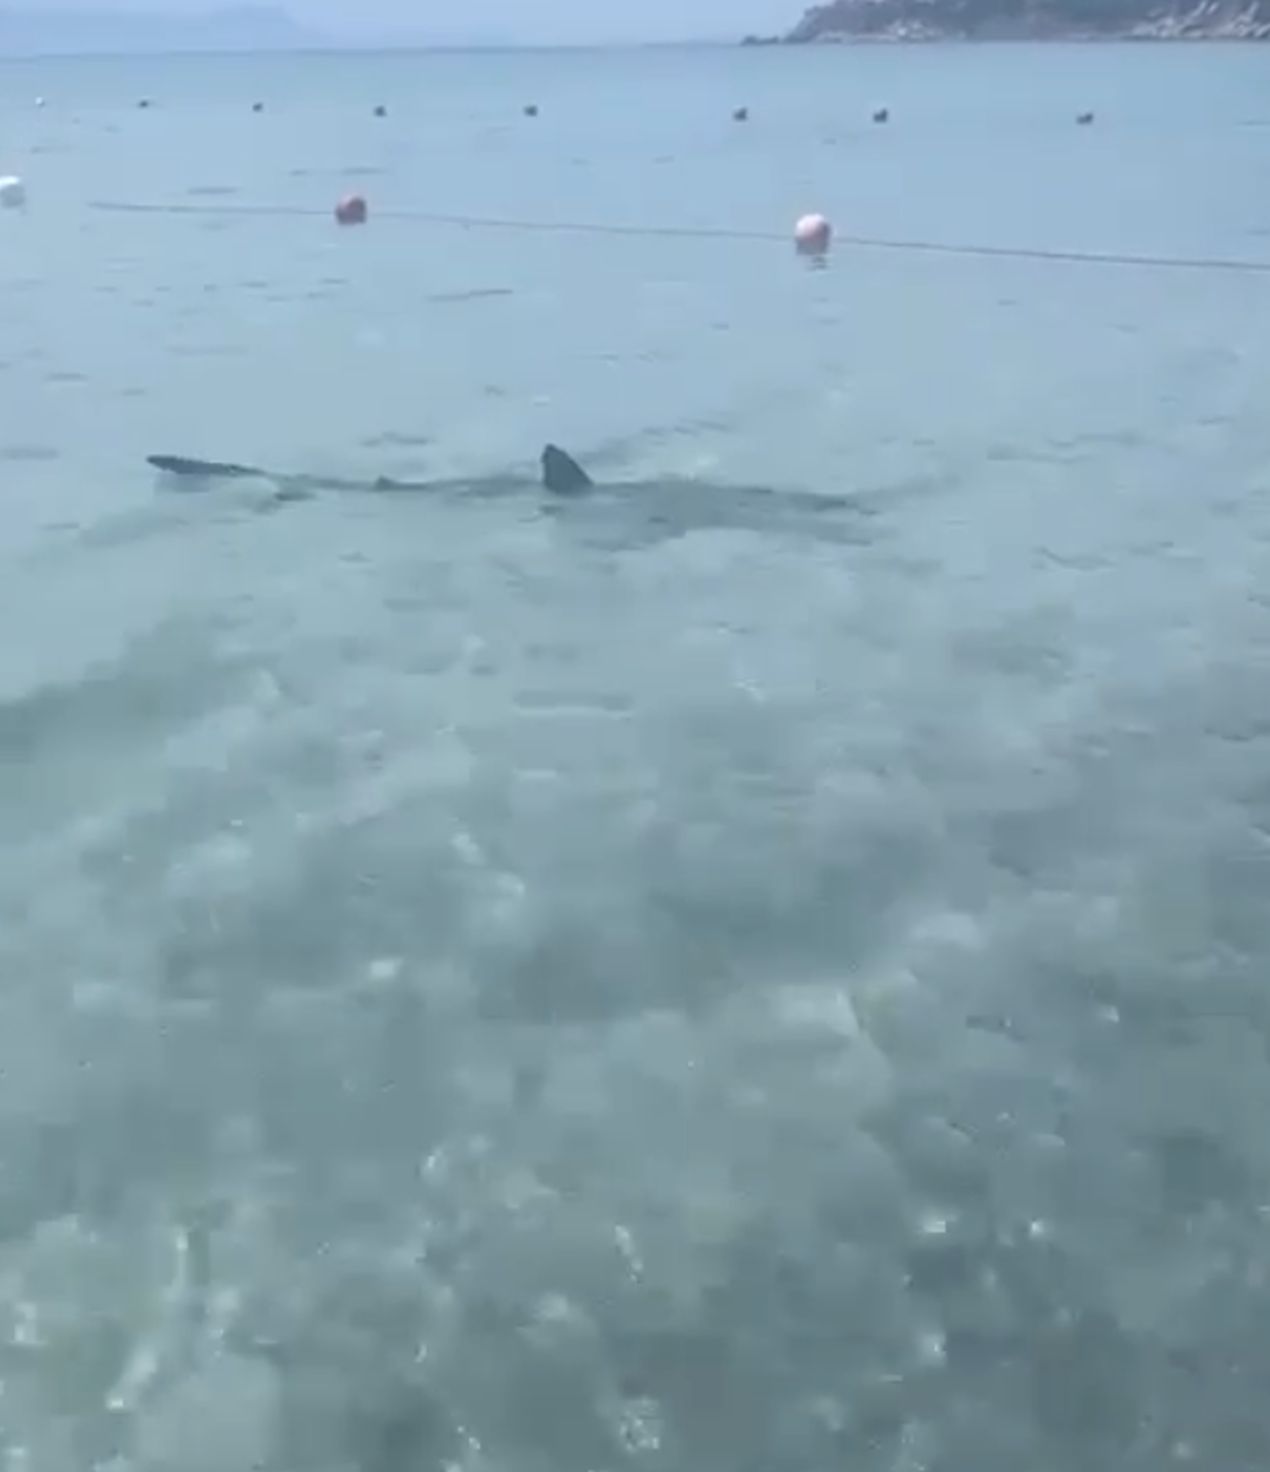 Torre delle Stelle, squalo in acqua